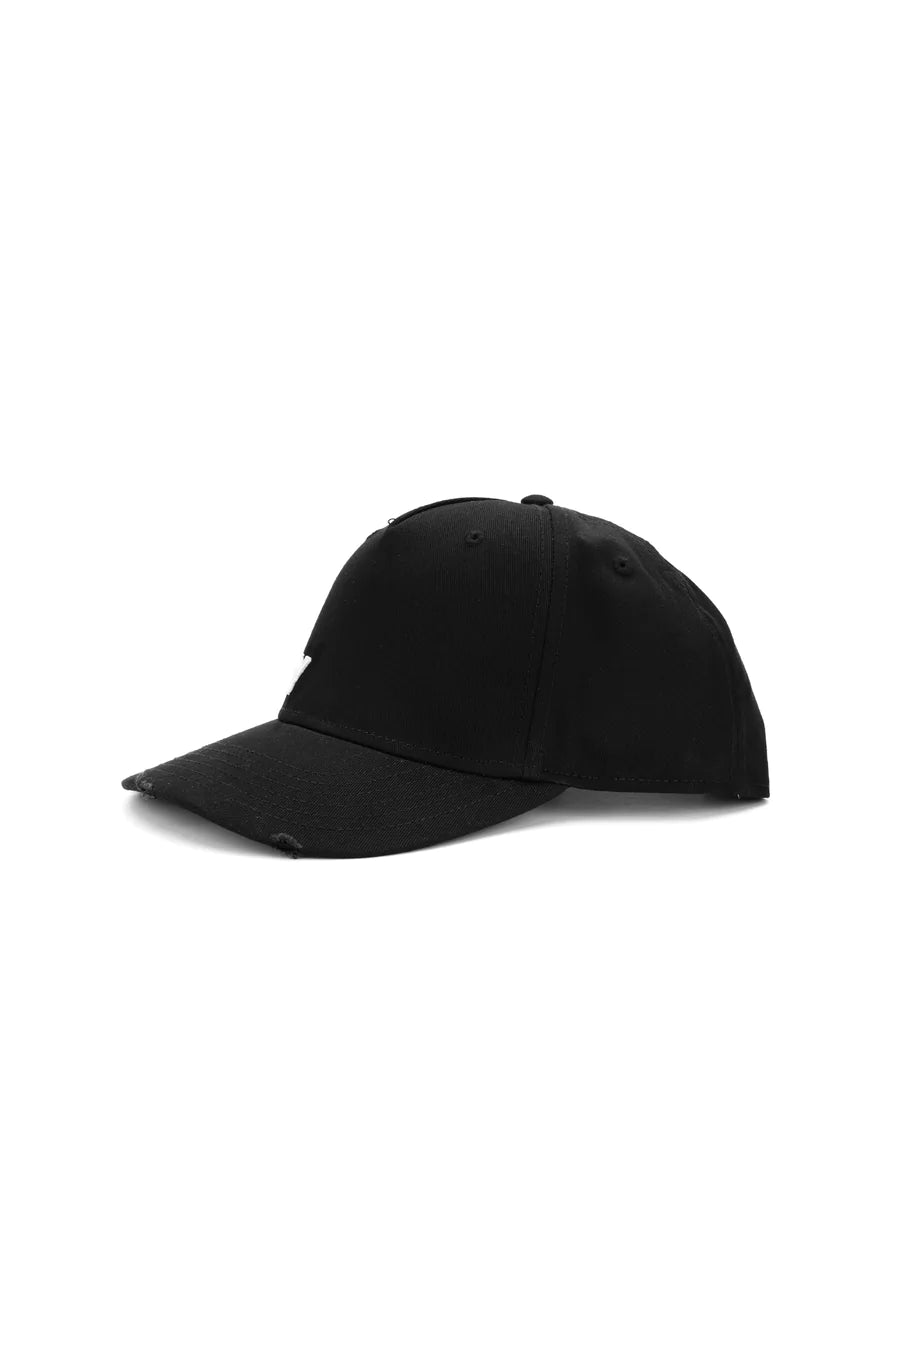 GORRO CLARISSE BLACK CAP BLACK U